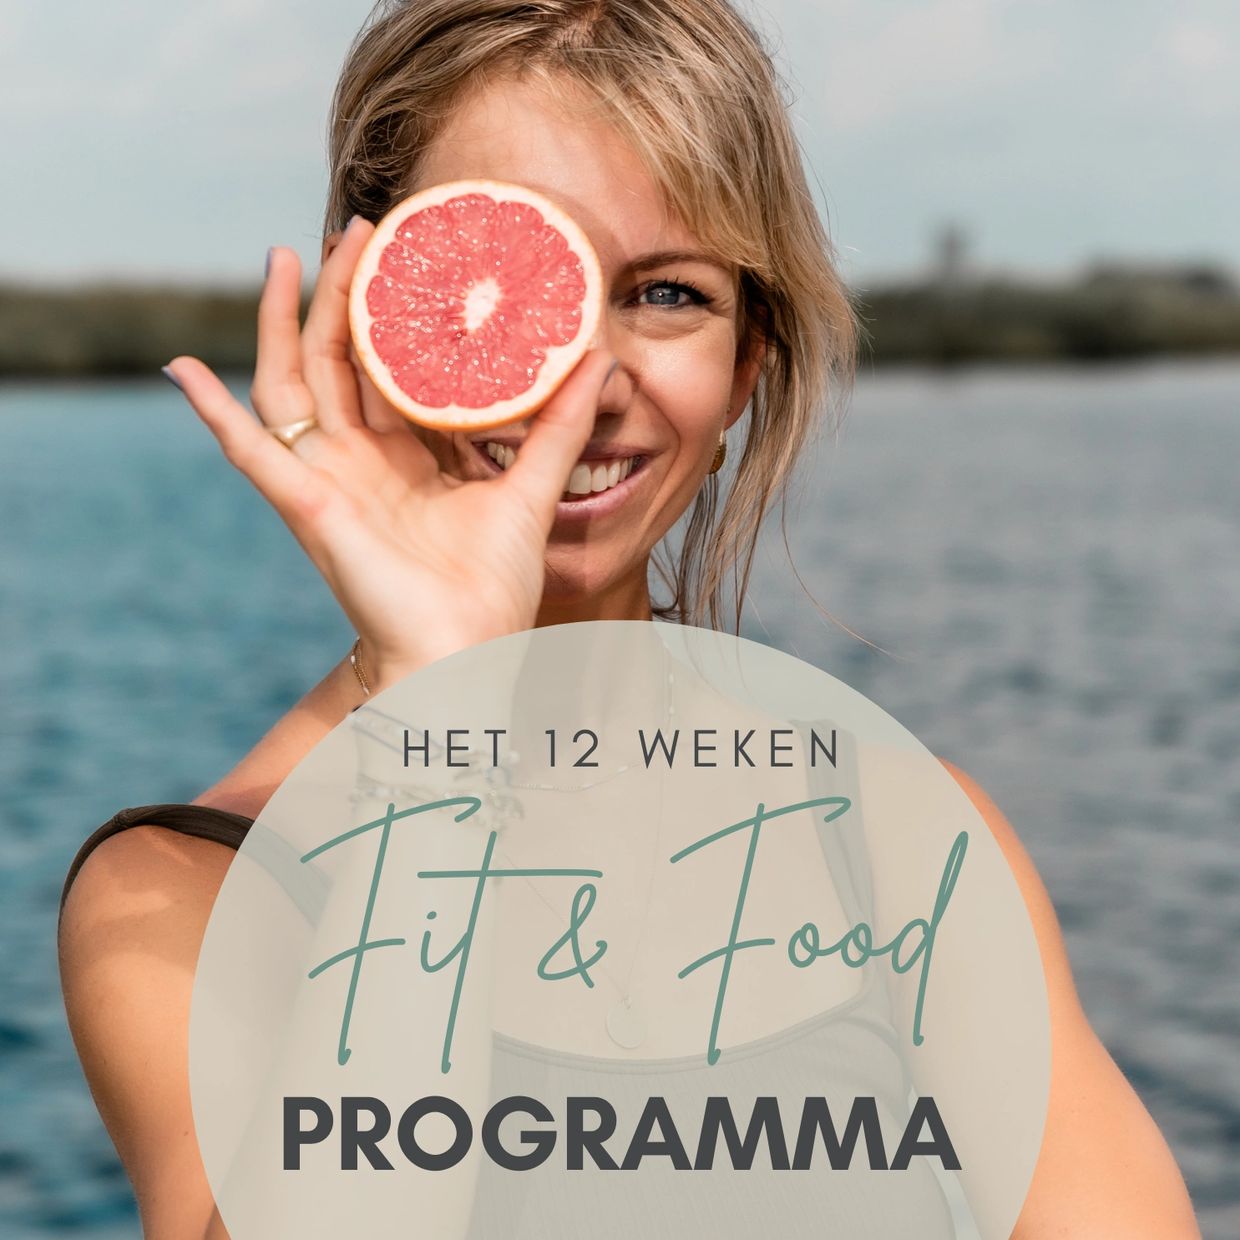 Programma van 12 weken waarbij je gepersonaliseerd voedingsadvies krijgt met behulp van een app.